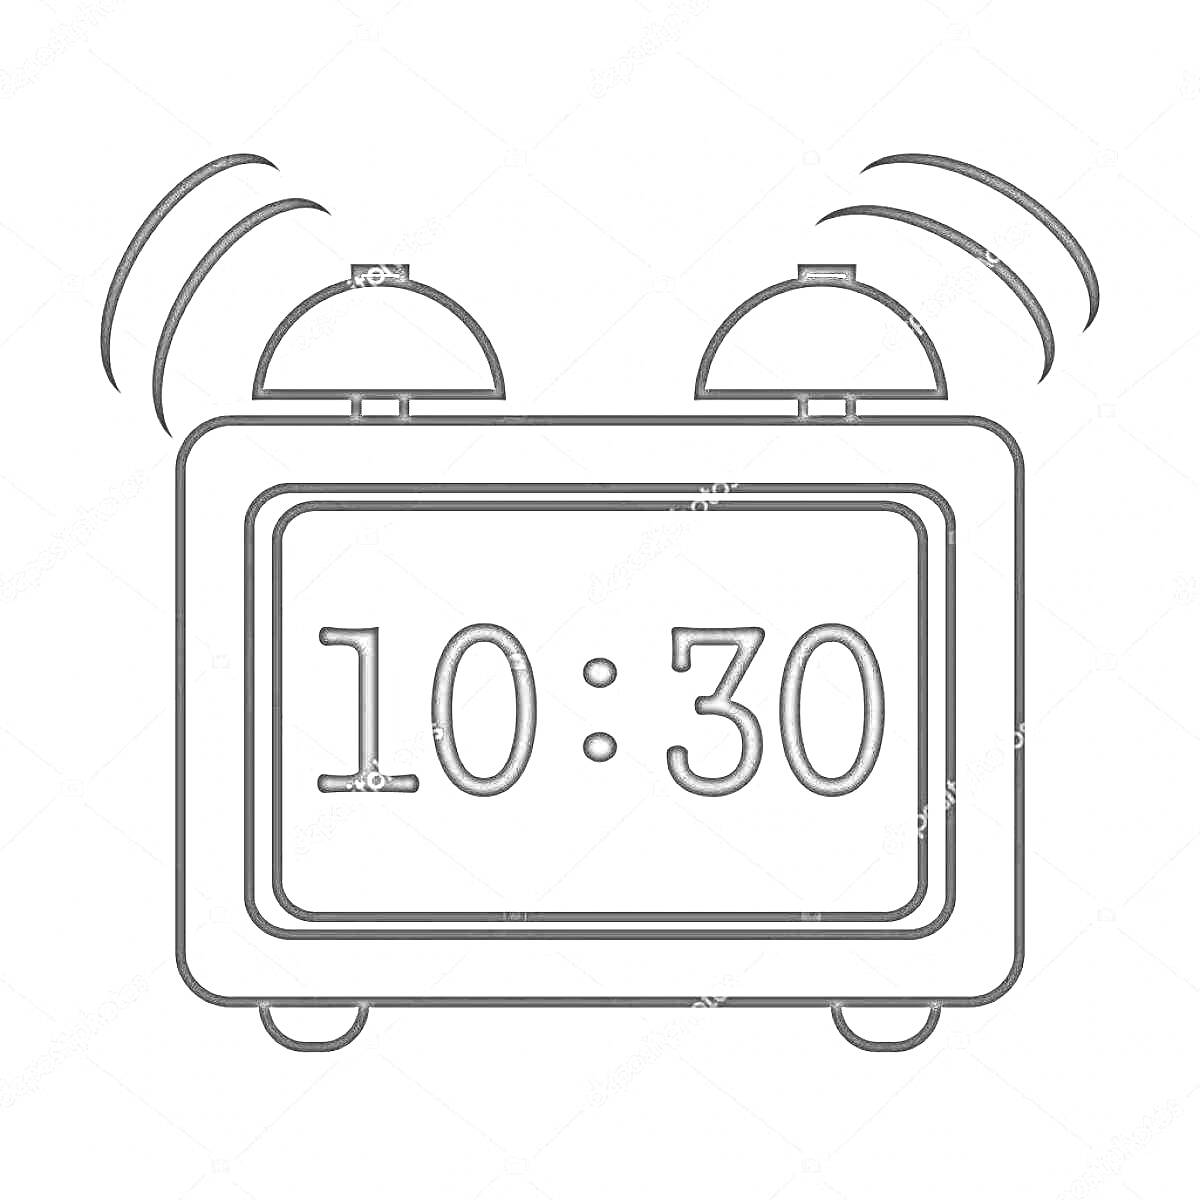 Раскраска электронные часы с двумя звонками и дисплеем, показывающим 10:30